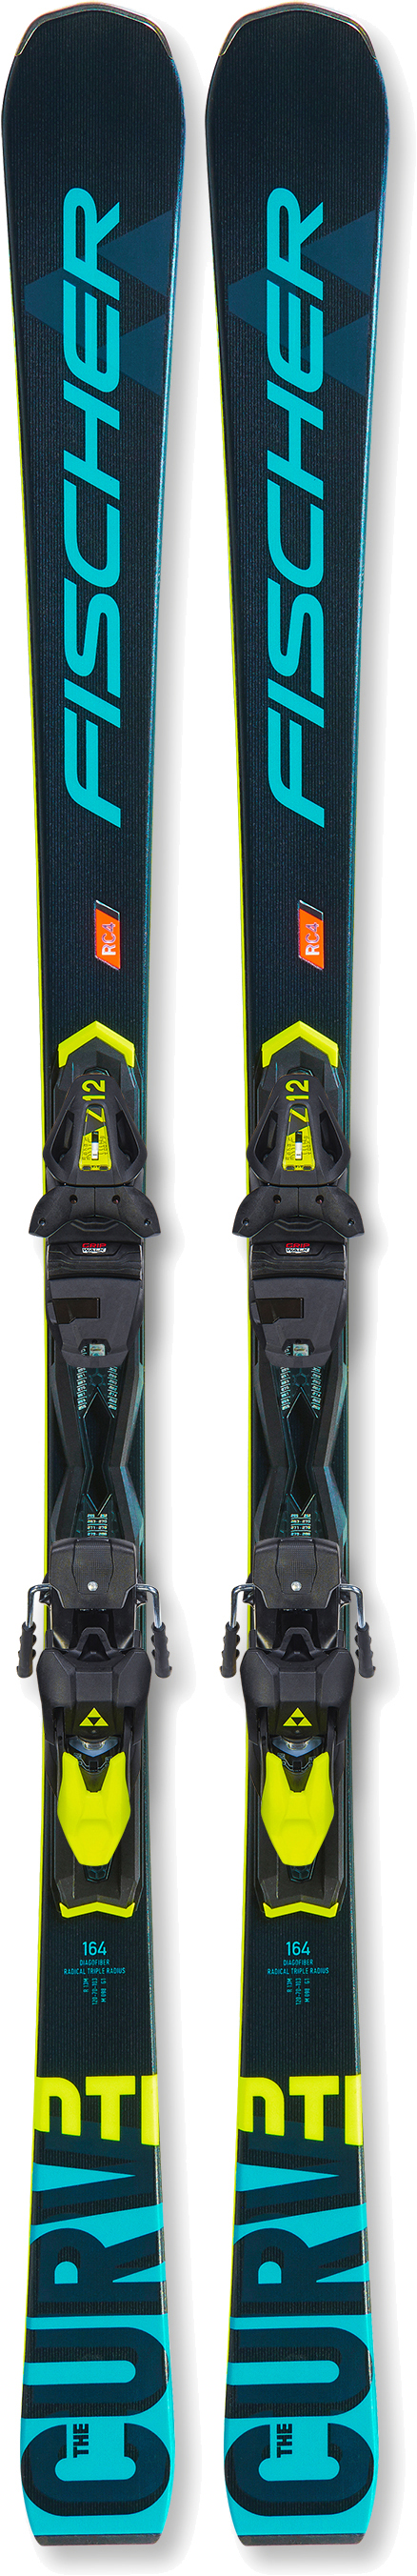 Лыжи для подготовленного склона Fischer The Curv DTI AR + RC4 Z12 PR T20220 164 см в Киеве